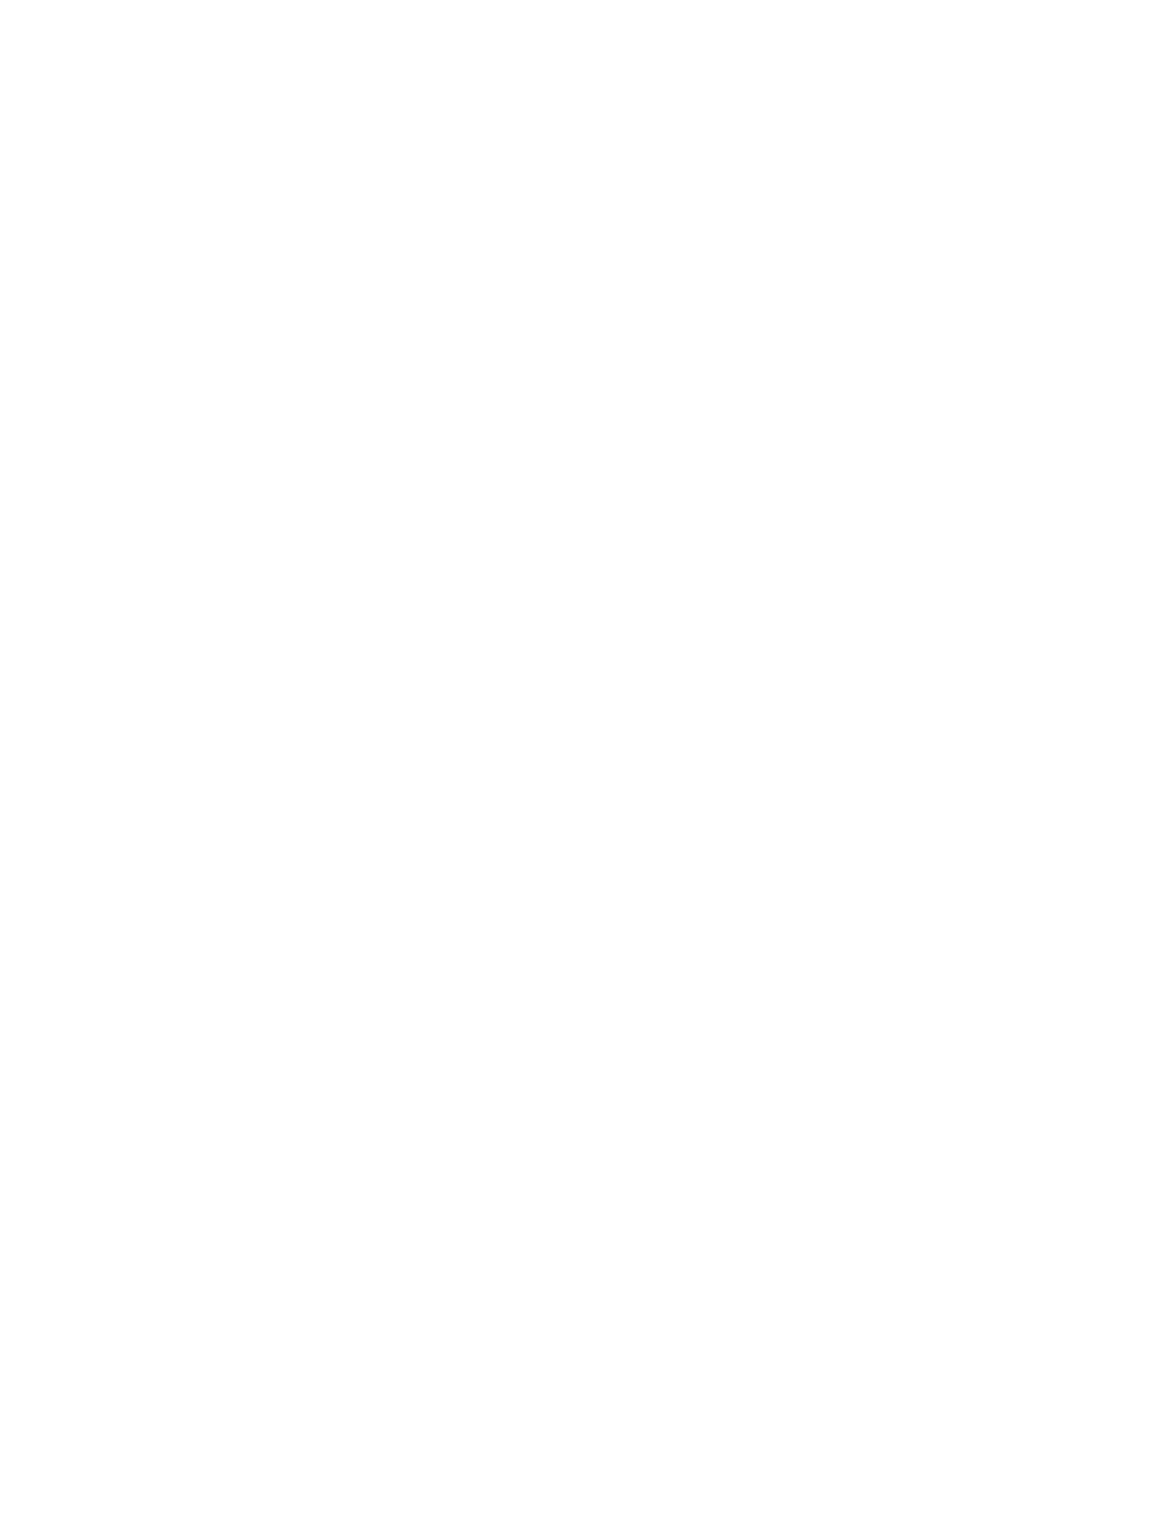 Jardine Matheson logo pour fonds sombres (PNG transparent)